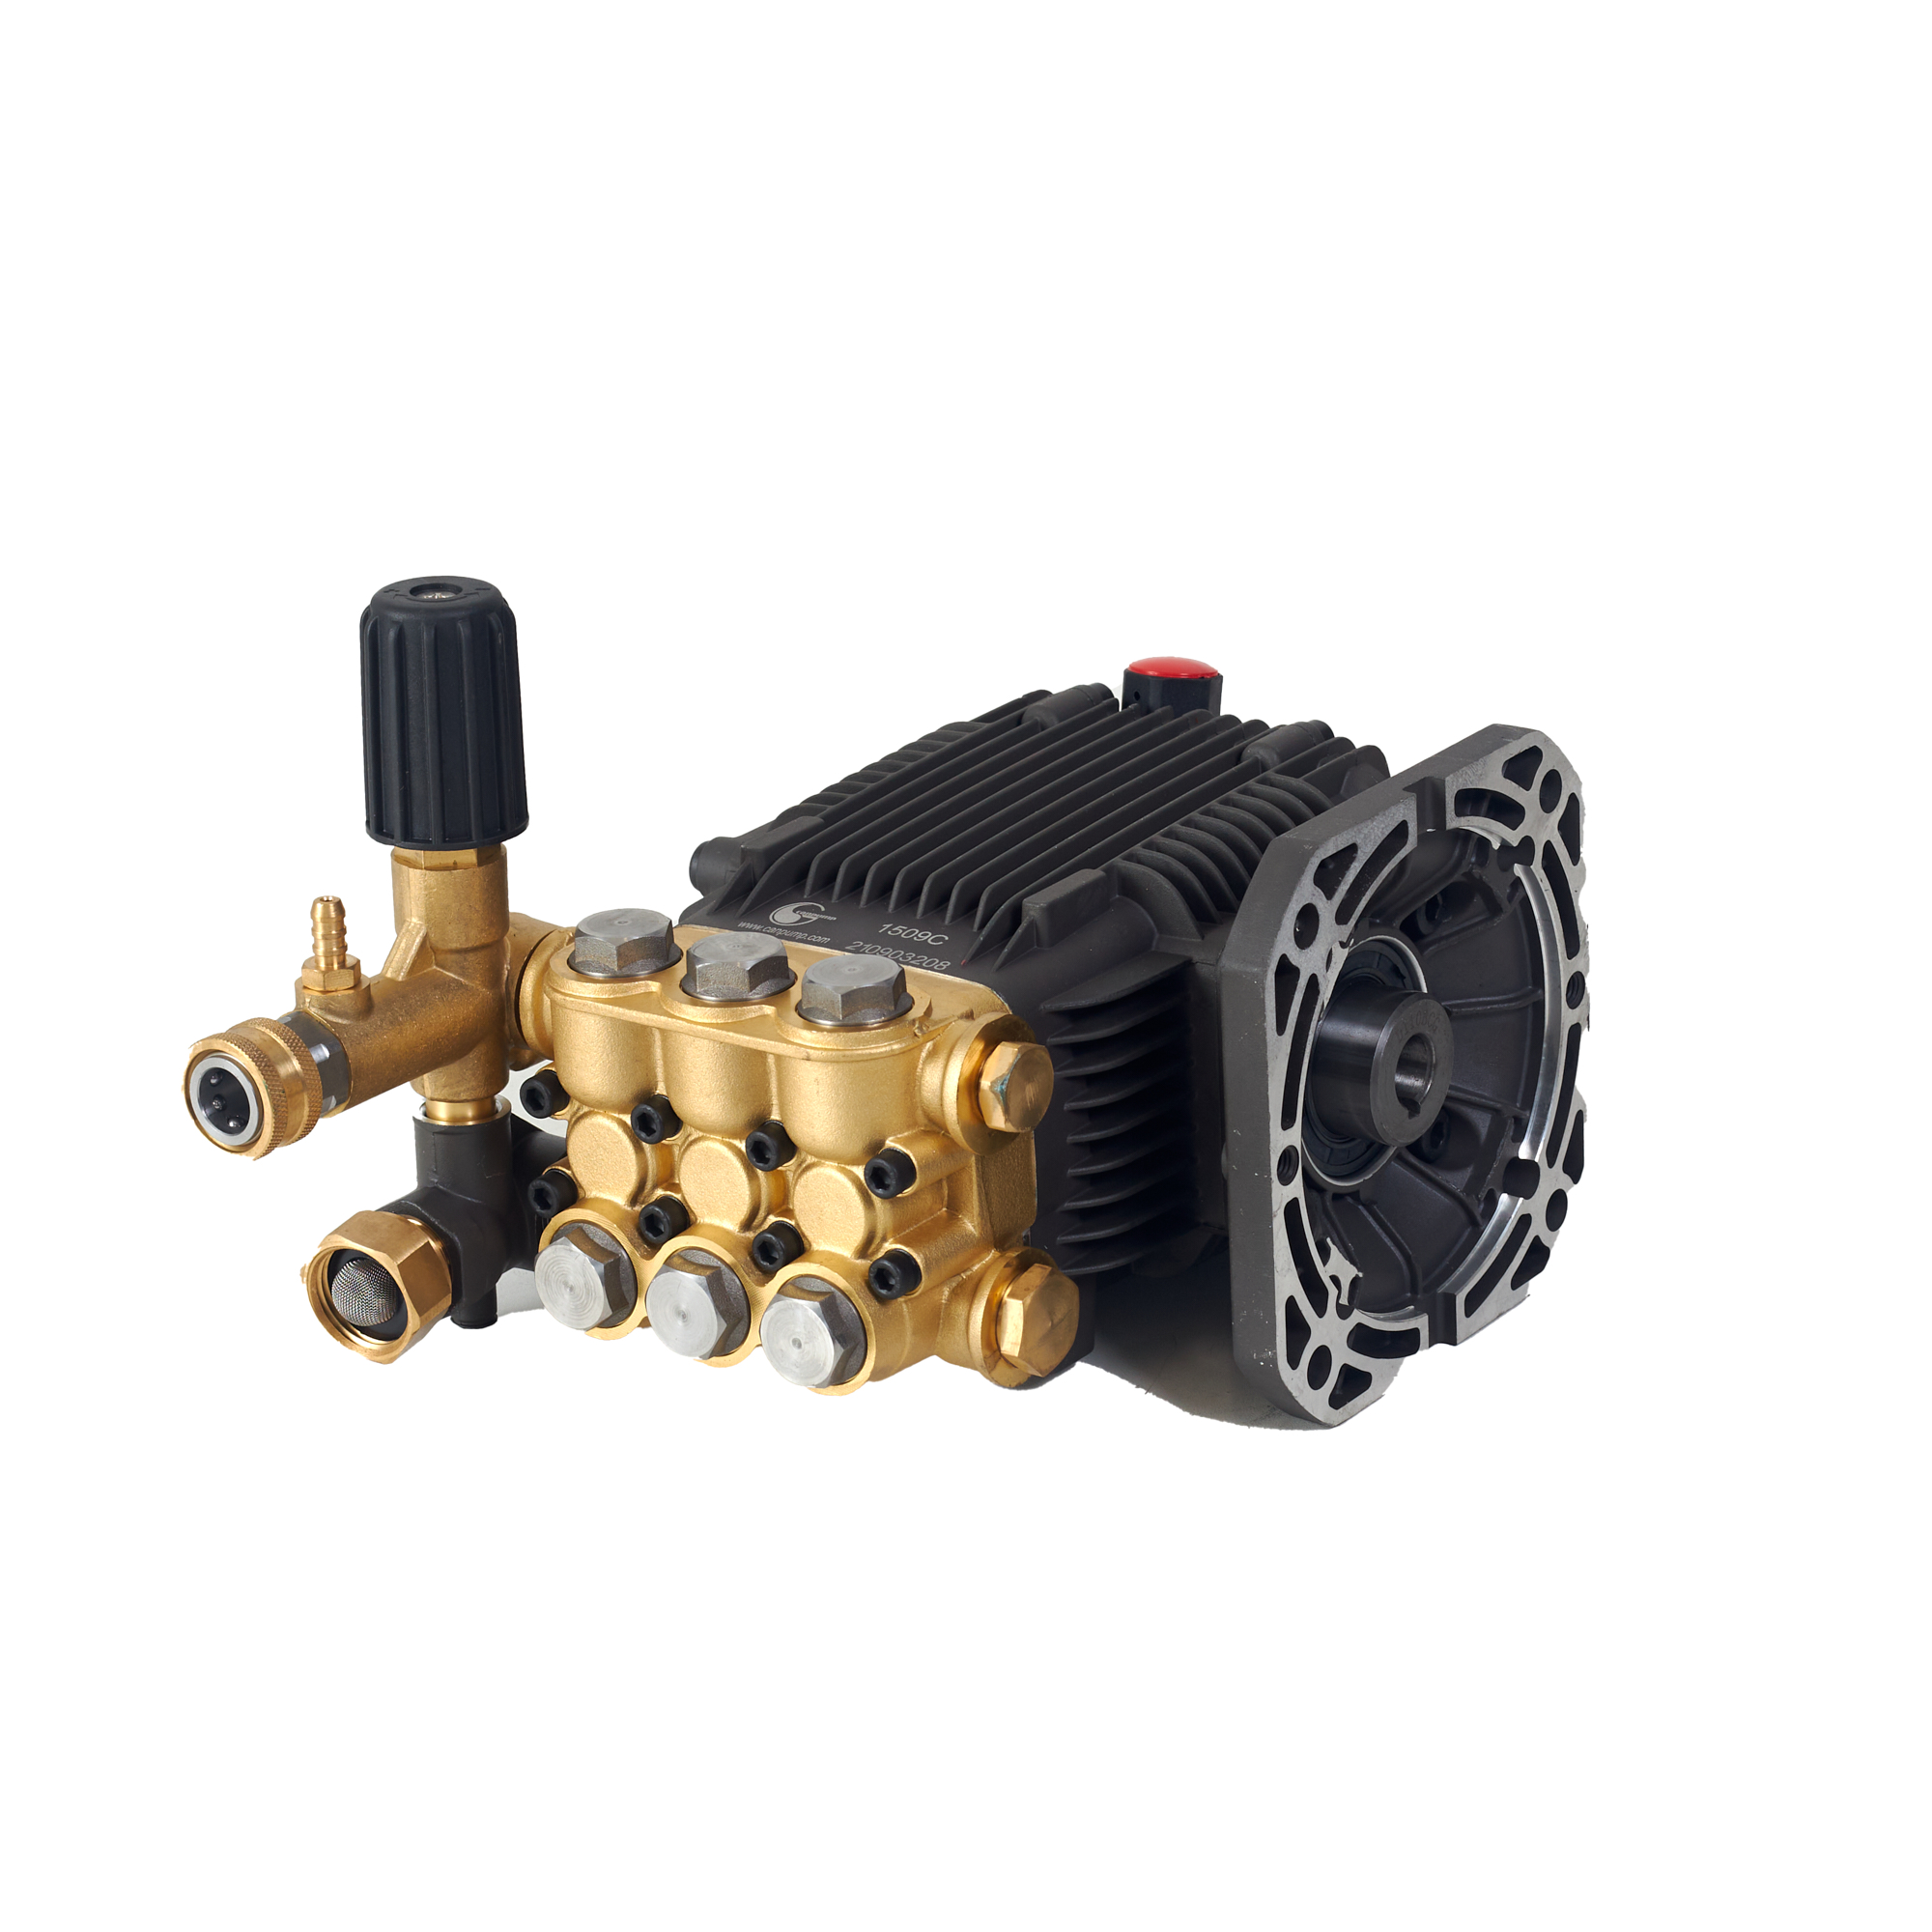 Canpump CF 1522 E: 1500 PSI @ 2.2 US GPM, 5/8-in Shaft Pressure Washer Pump